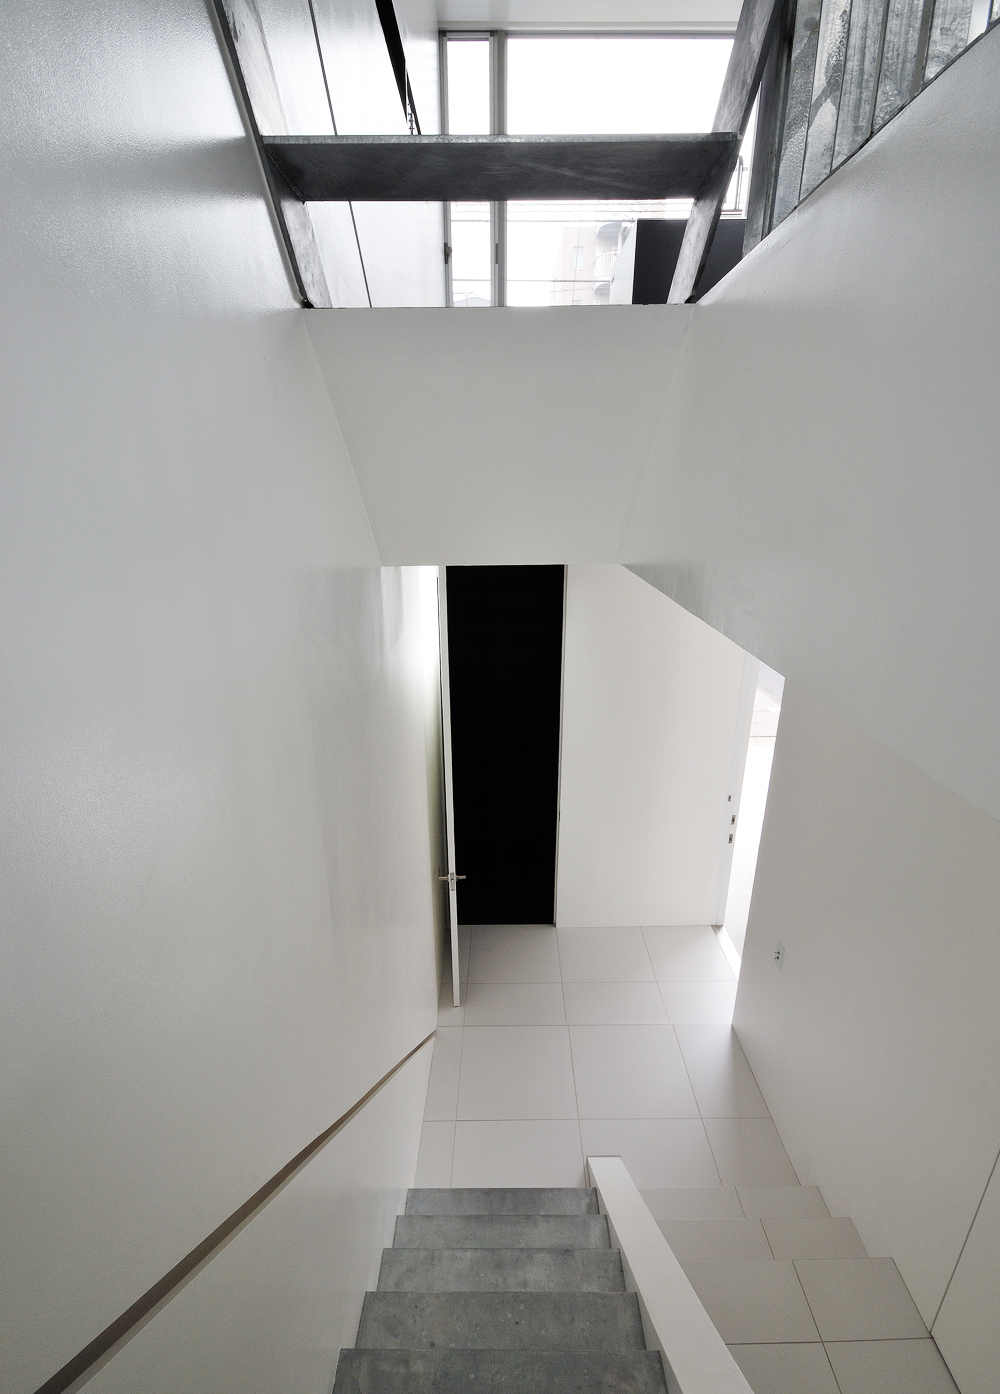 美しい白の床壁と、素材そのものが活かされた階段が新鮮な玄関ホール